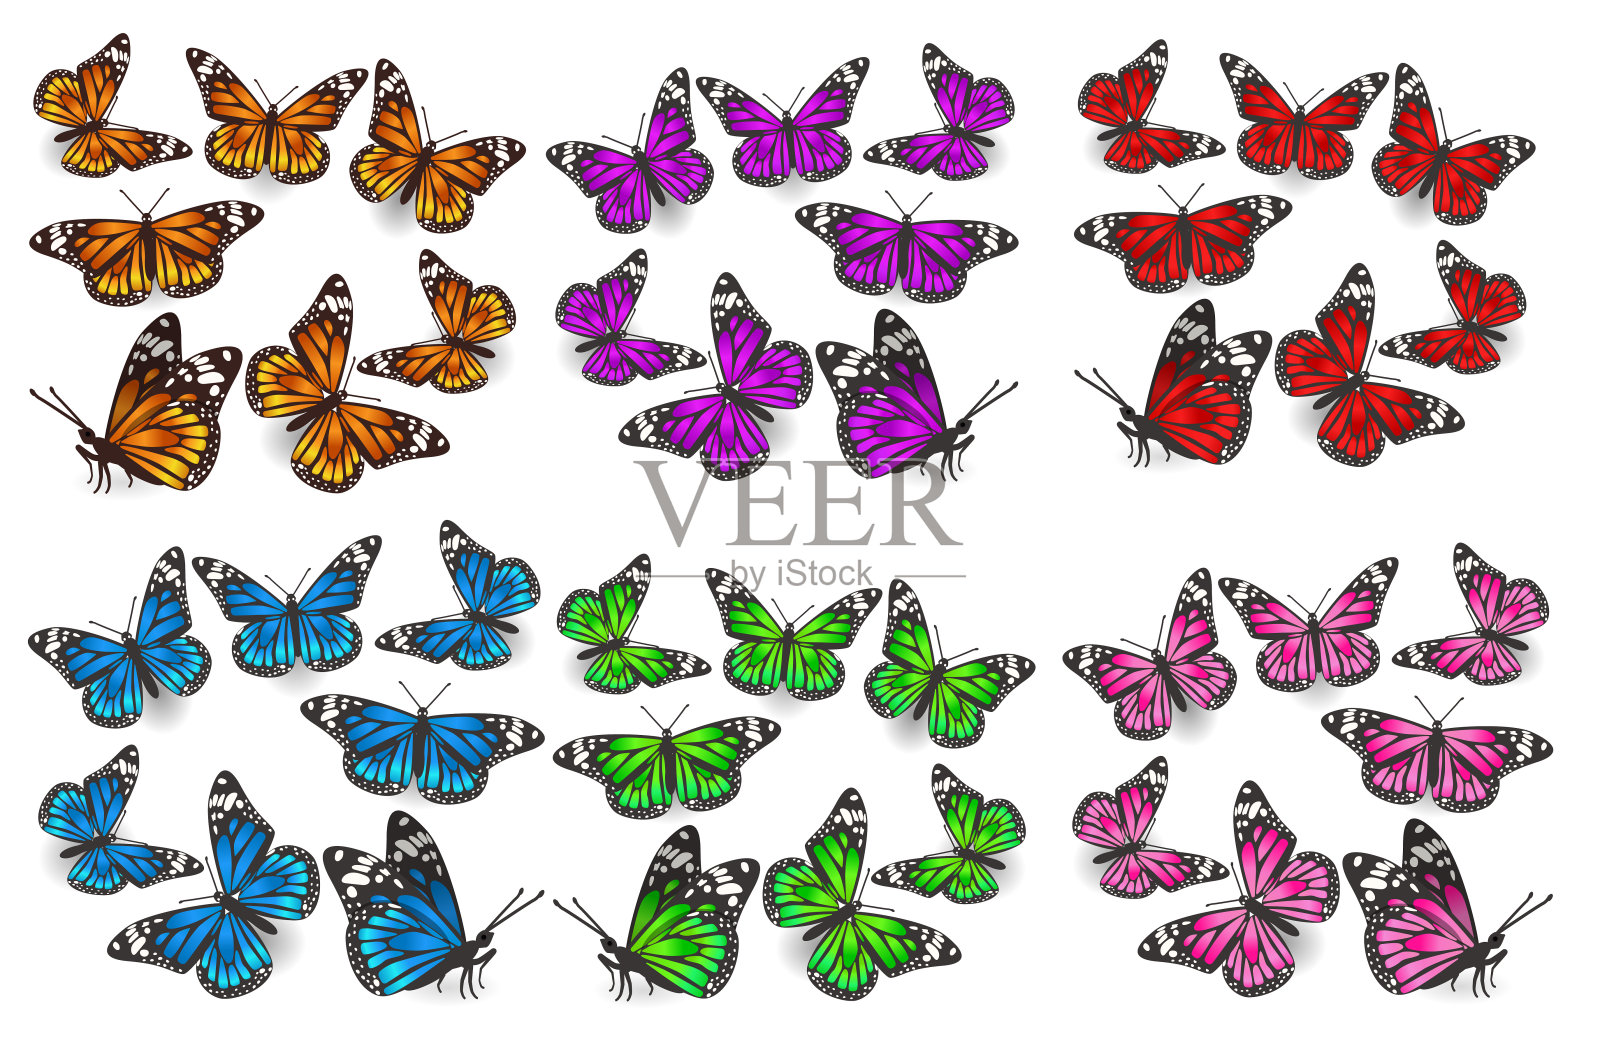 一大堆角度不同、颜色各异的蝴蝶，有绿、蓝、橙、红、粉、紫。设计元素。矢量图形。插画图片素材